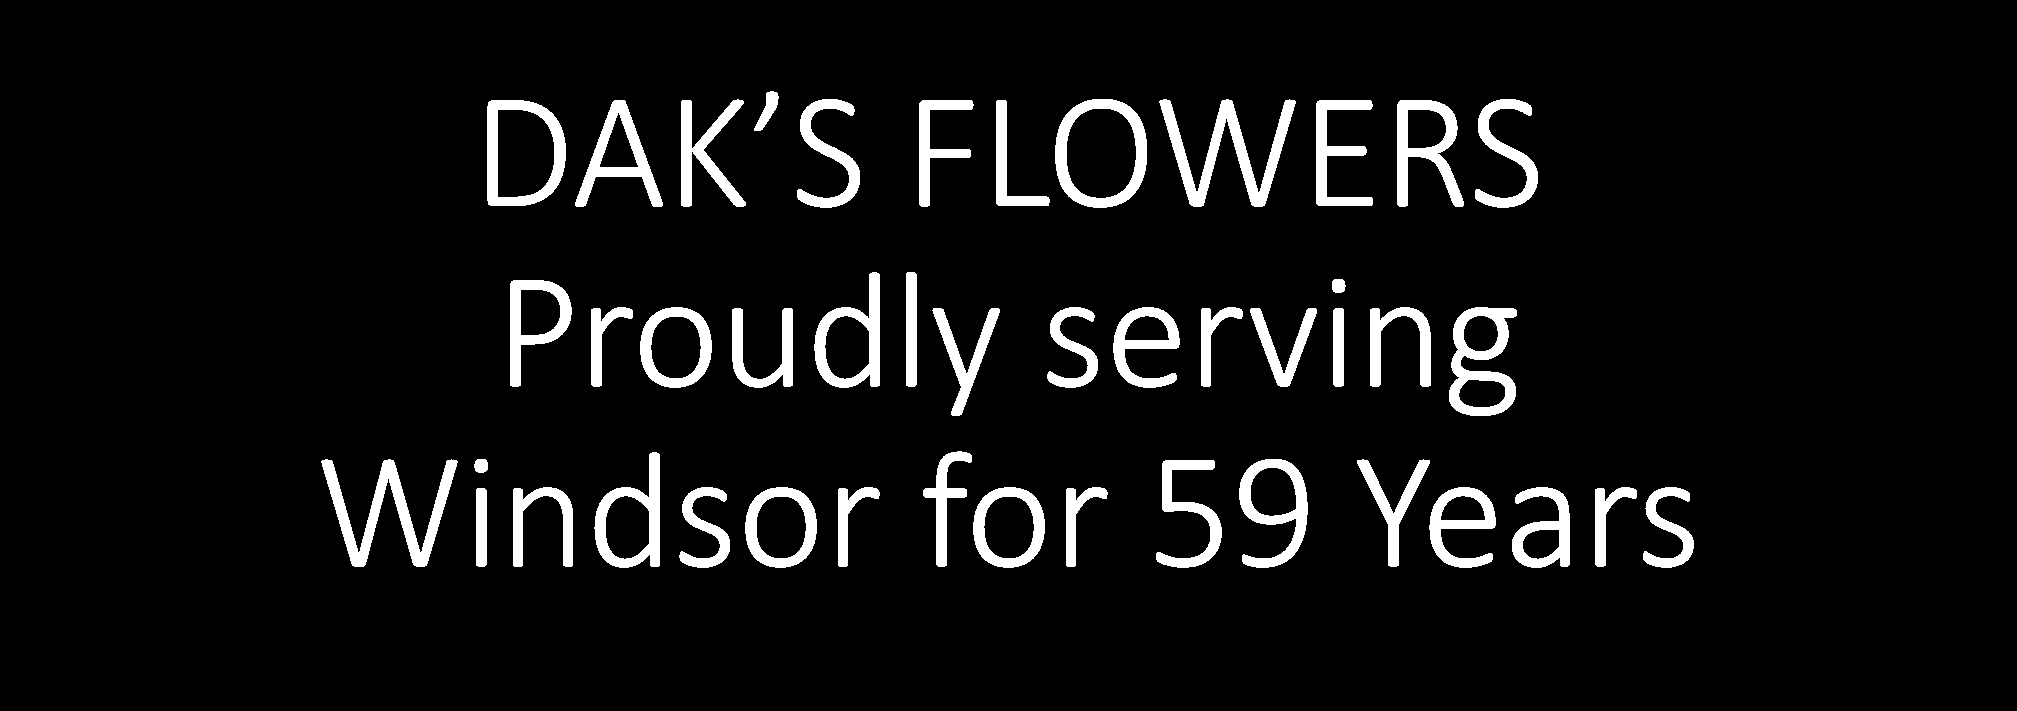 Dak's Flowers - Fleuristes et magasins de fleurs